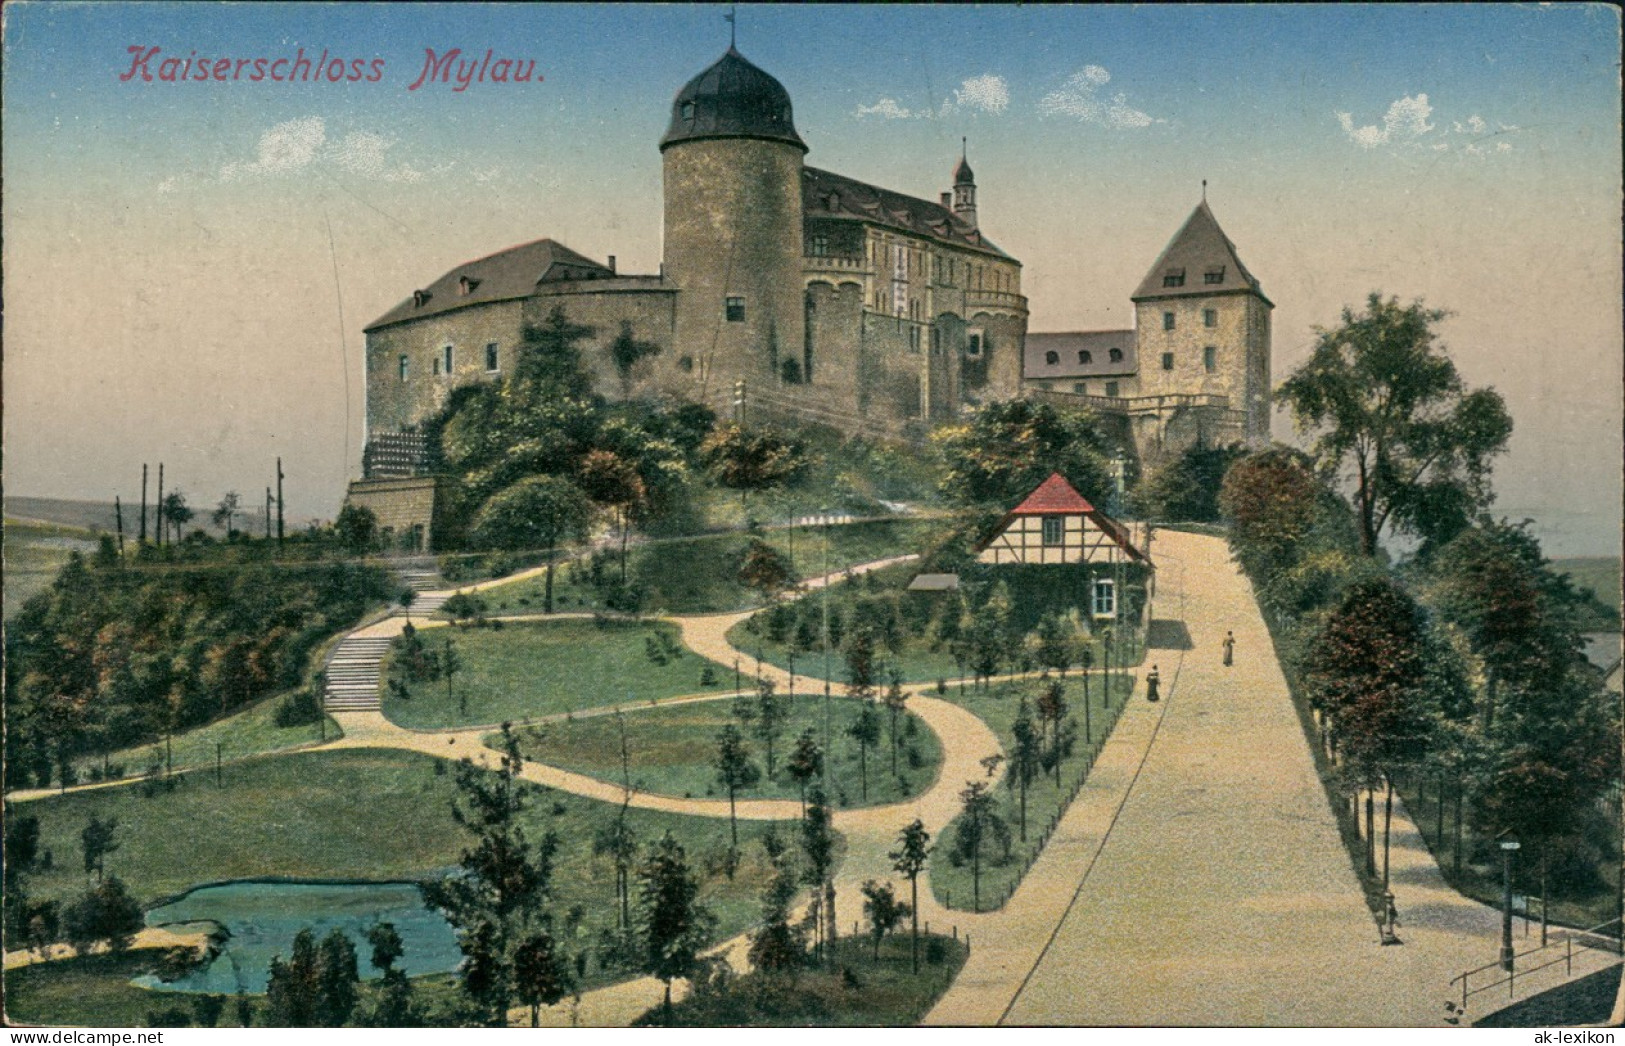 Mylau-Reichenbach (Vogtland) Kaiserschloss Gesamtansicht (Castle Building) 1921 - Mylau